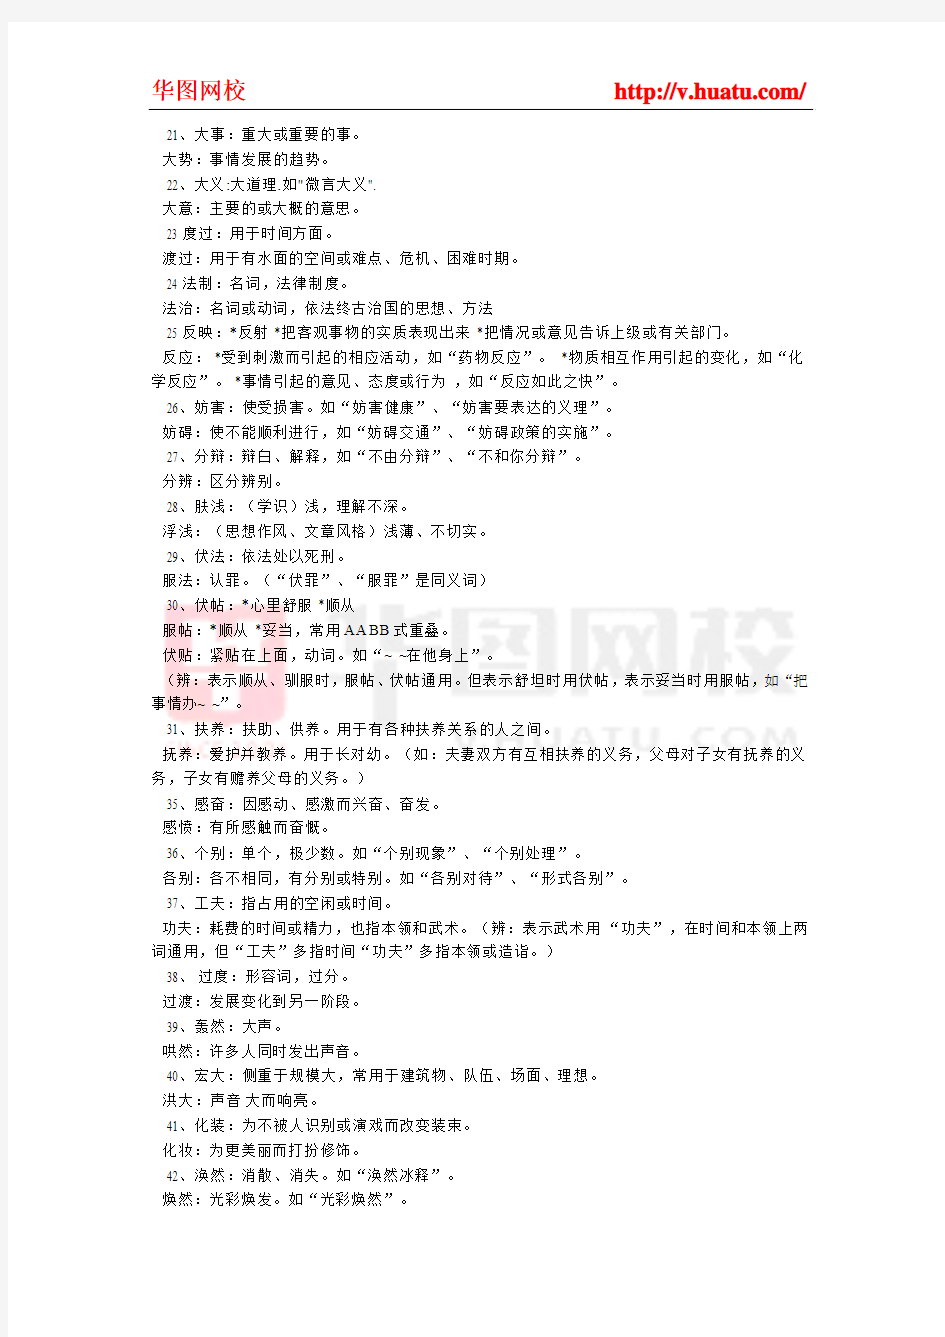 2014年江苏省公务员考试备考资料之近义词辨析186组